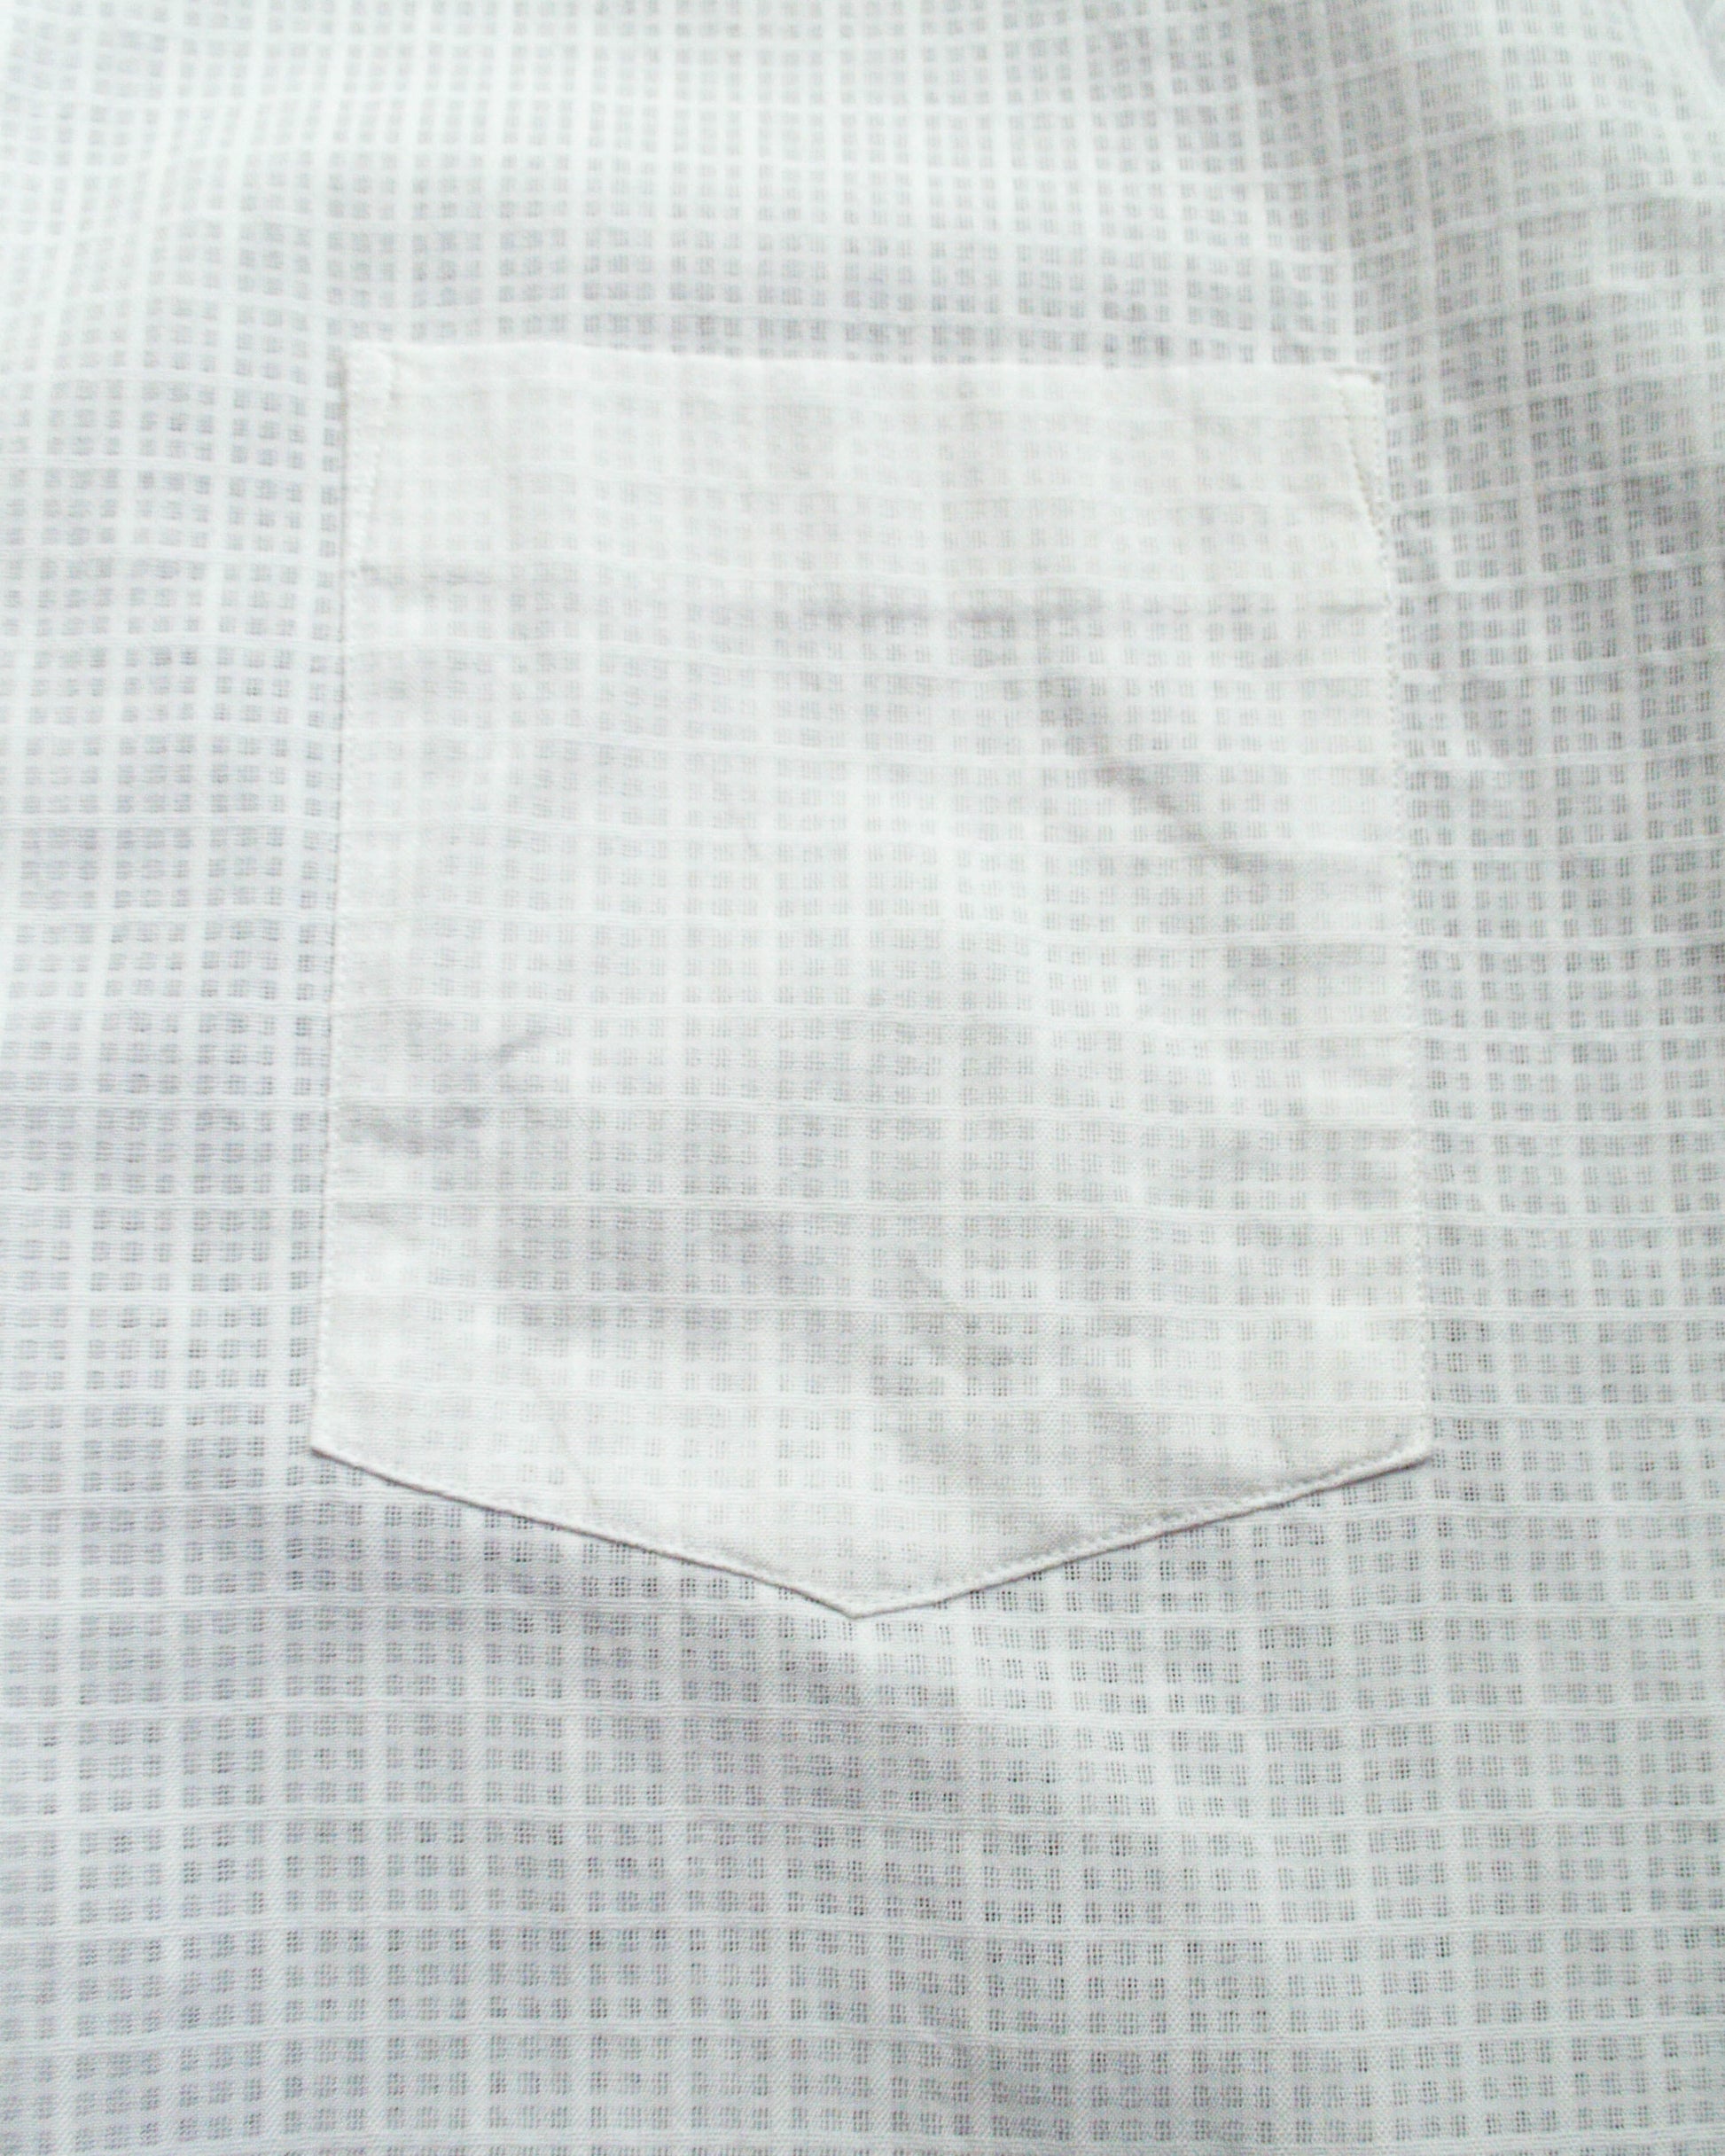 Comme Des Garçons Shirt 90s Grid Lace / Mesh 3/4 Zip Shirt (L~XL)